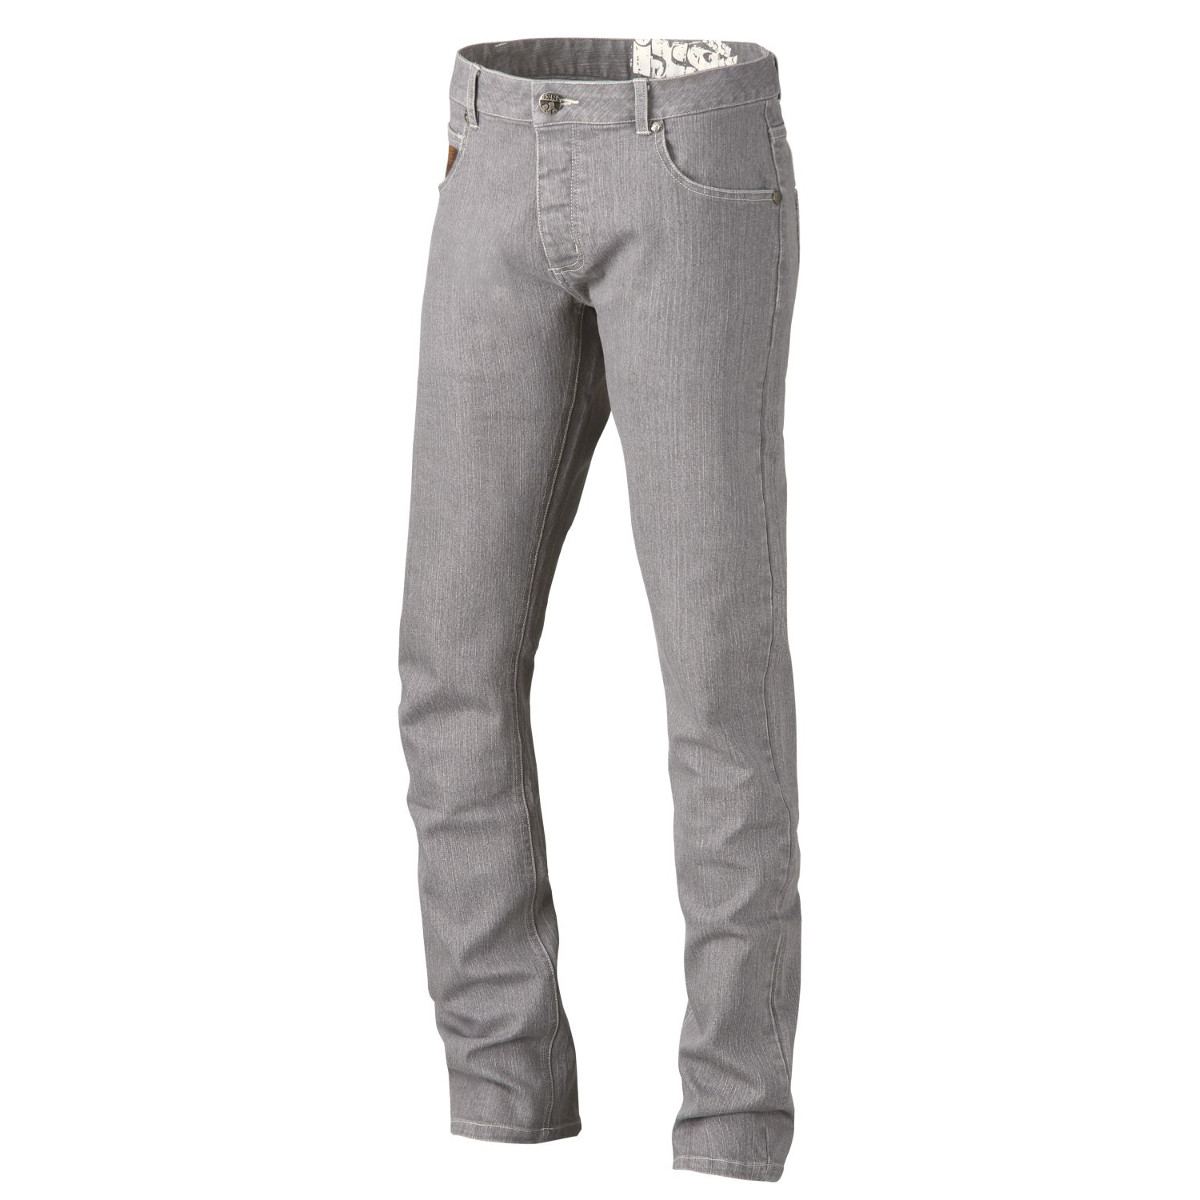 IXS Bike-Jeans Modest Grau-Demin